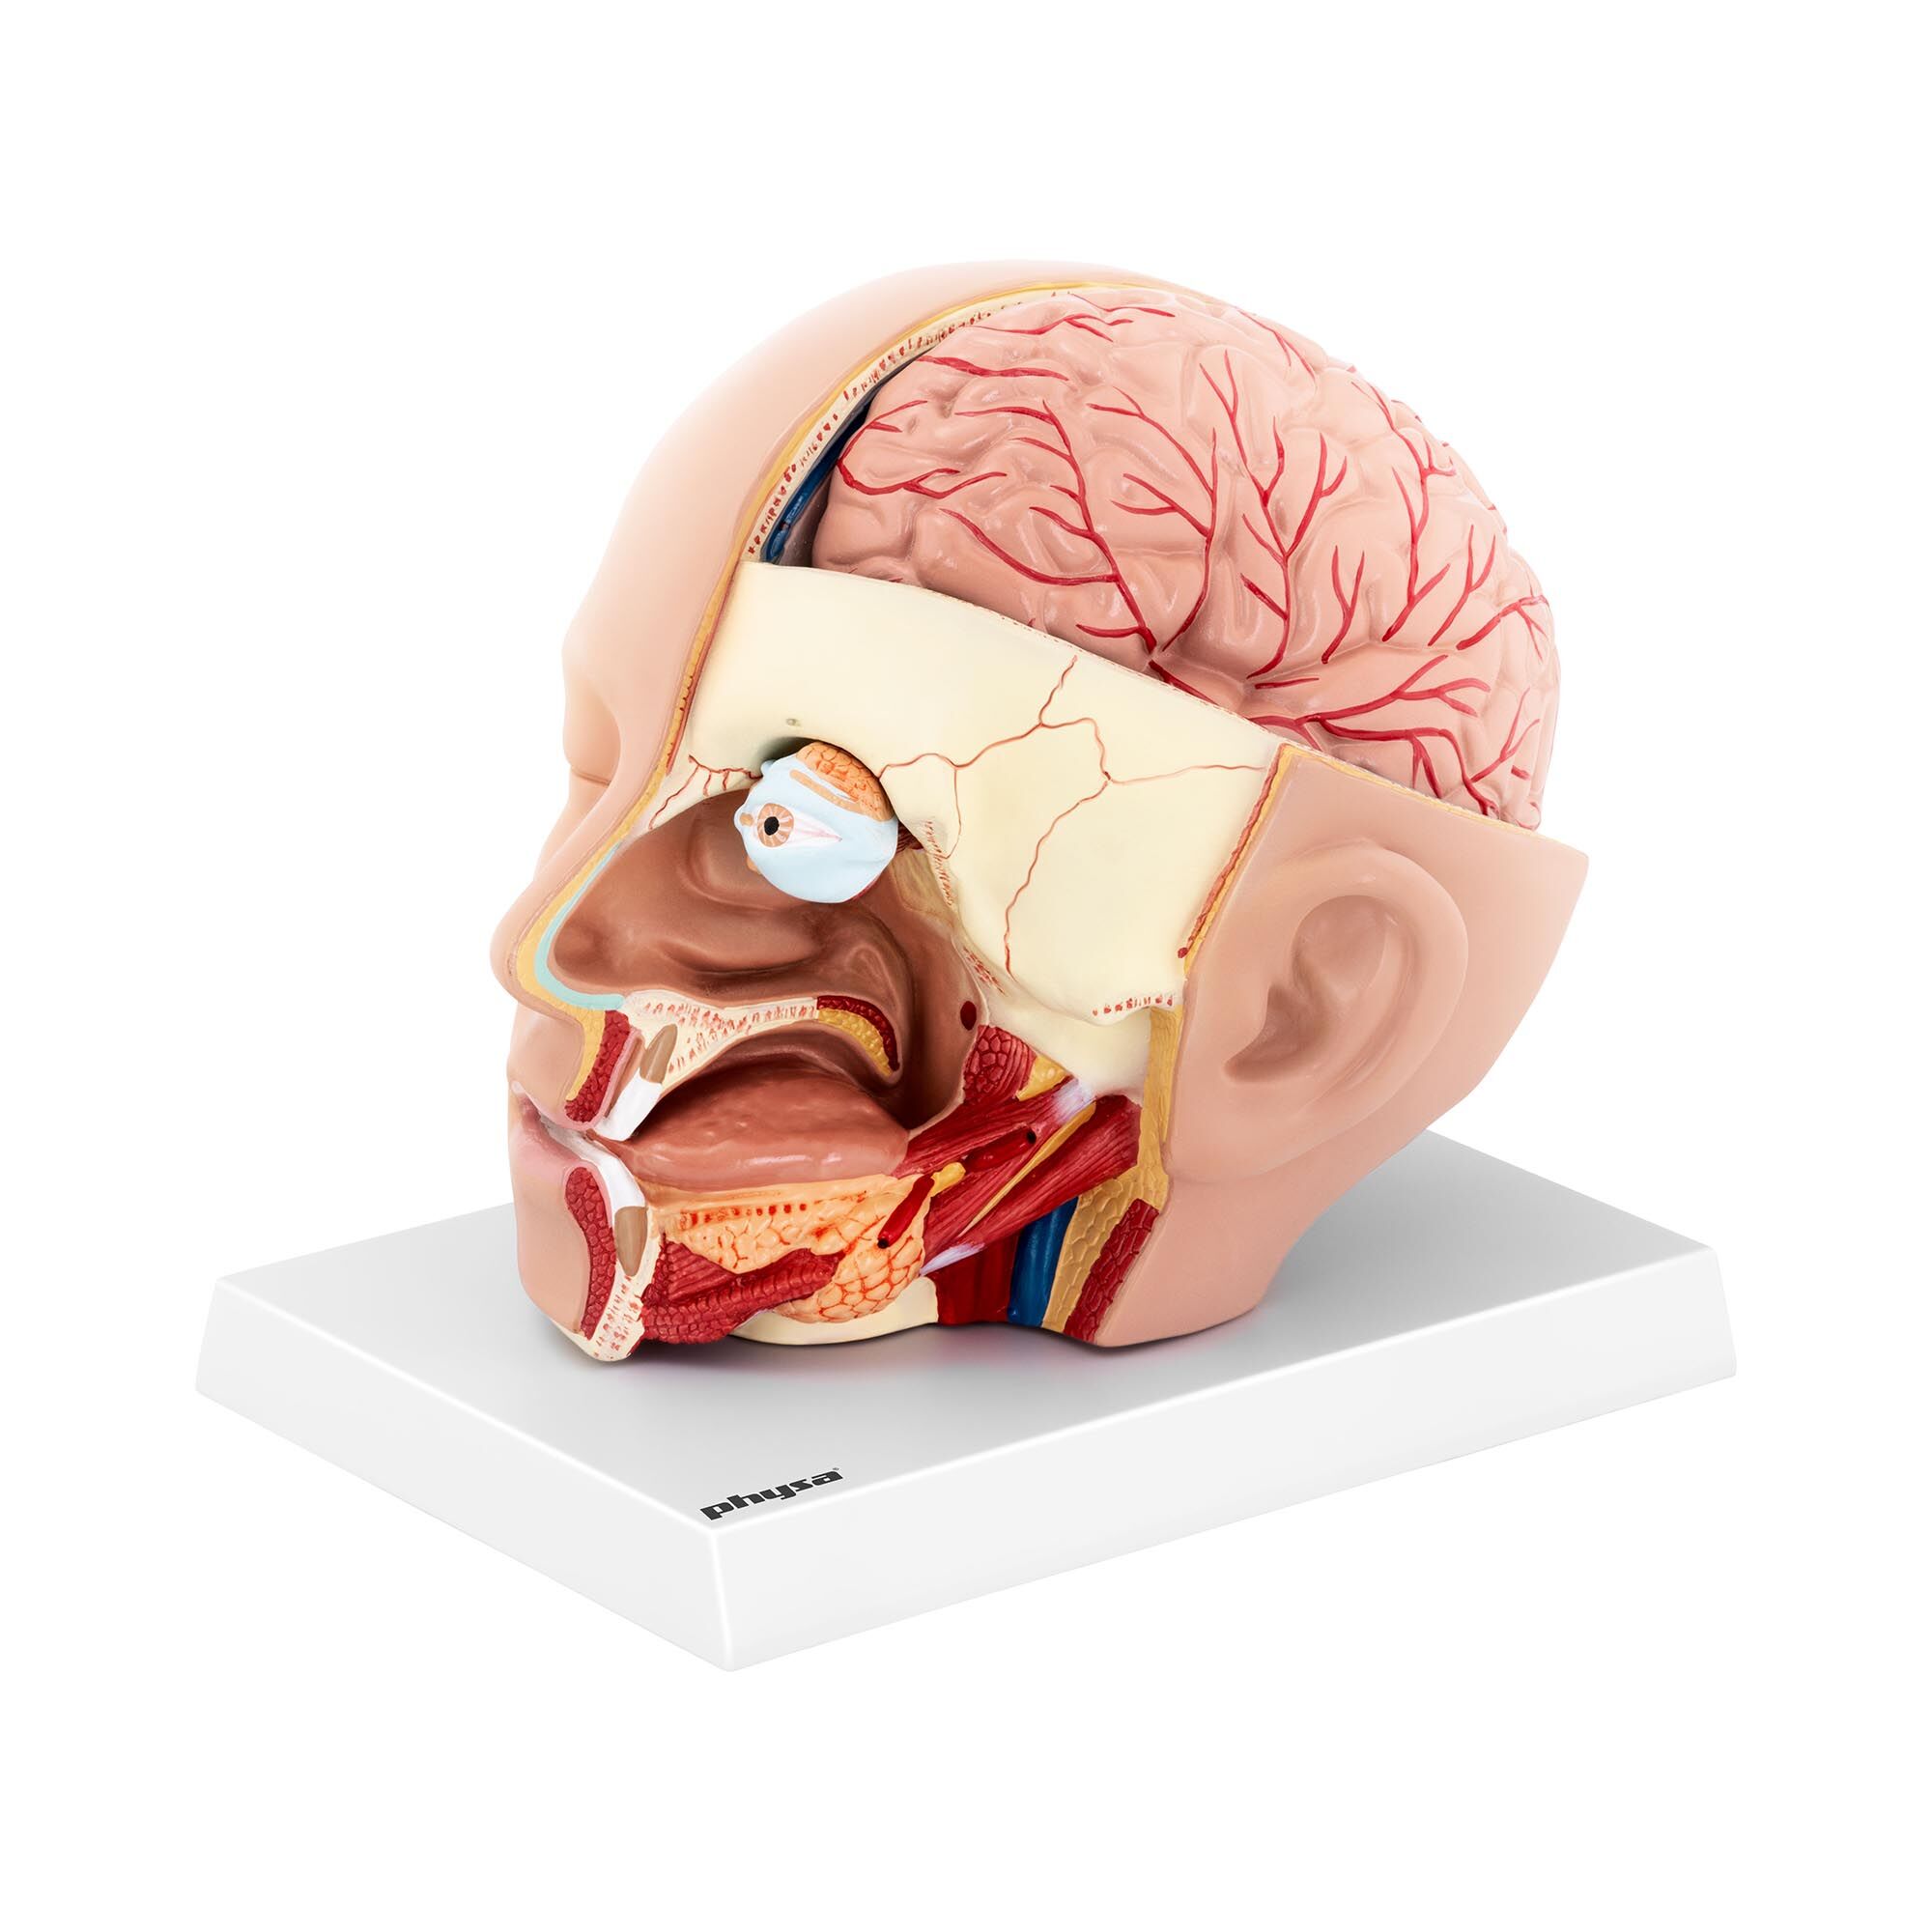 physa Anatomie Schädel - in 4 Teile zerlegbar - Originalgröße